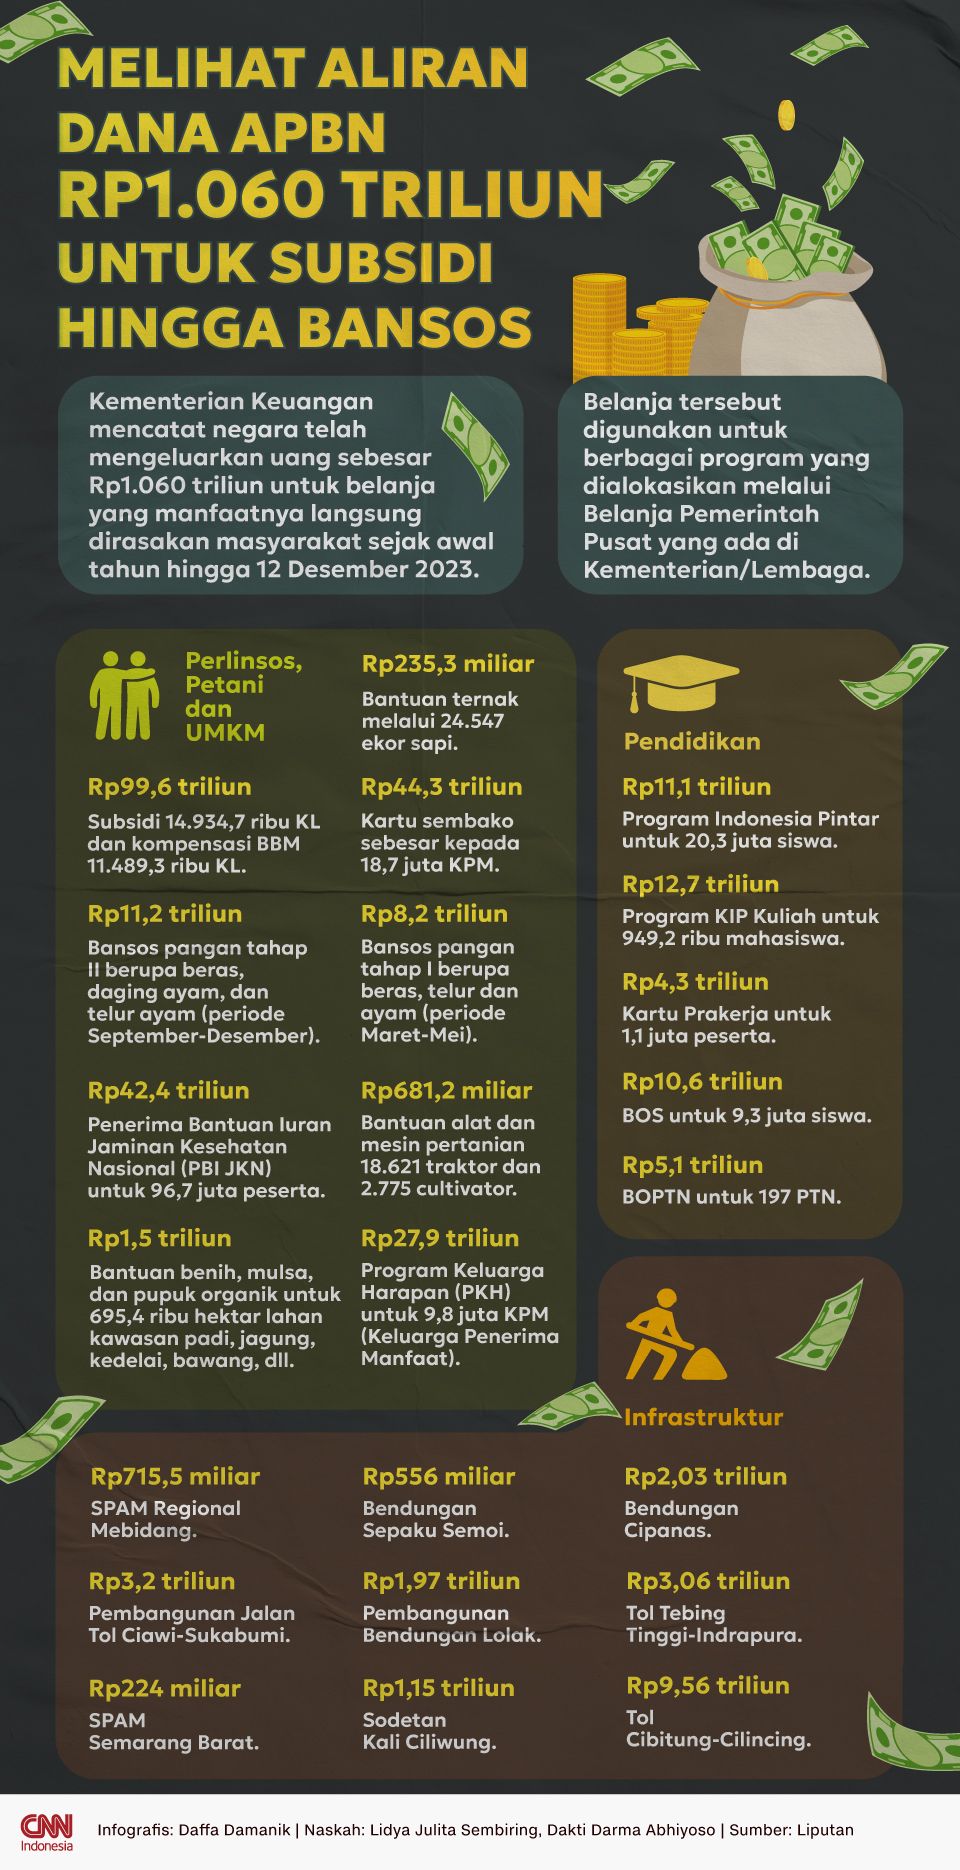 Infografis Melihat Aliran Dana APBN Rp1.060 Triliun untuk Subsidi Hingga Bansos